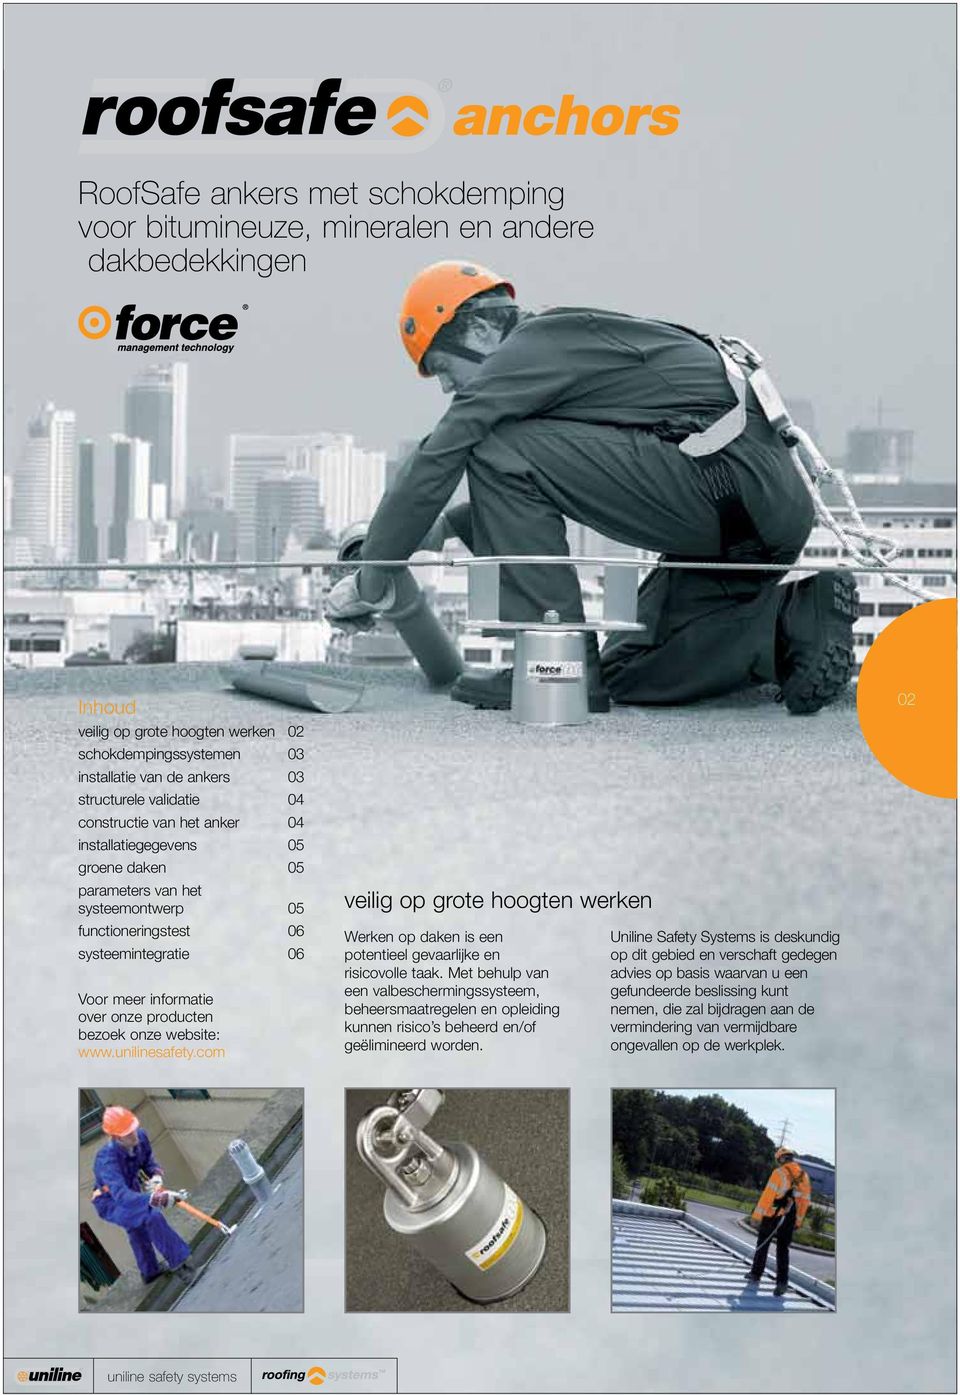 producten bezoek onze website: www.unilinesafety.com veilig op grote hoogten werken Werken op daken is een potentieel gevaarlijke en risicovolle taak.